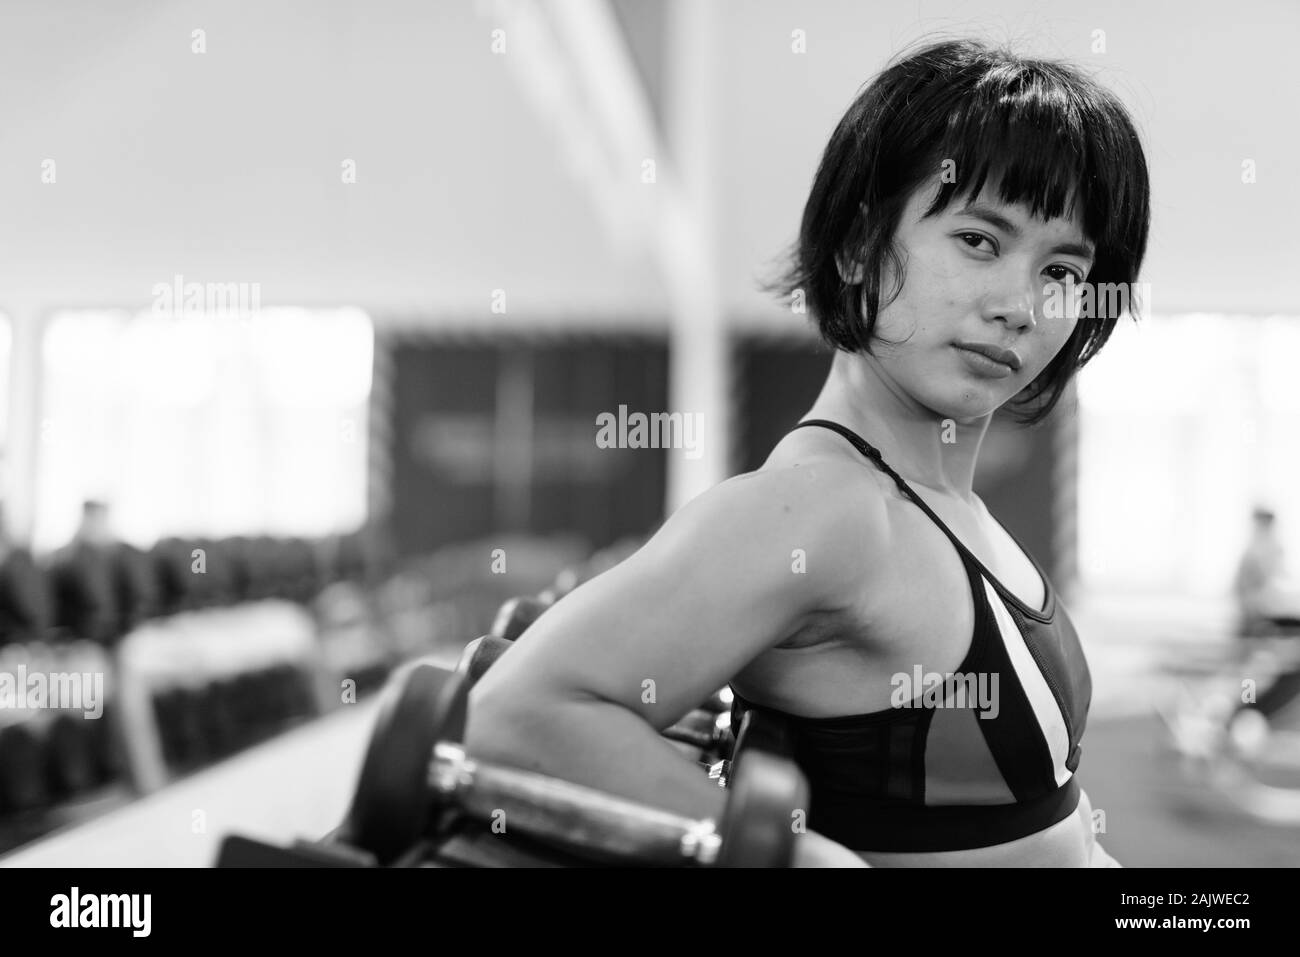 Junge schöne asiatische Frau, die an der Turnhalle arbeiten Stockfoto